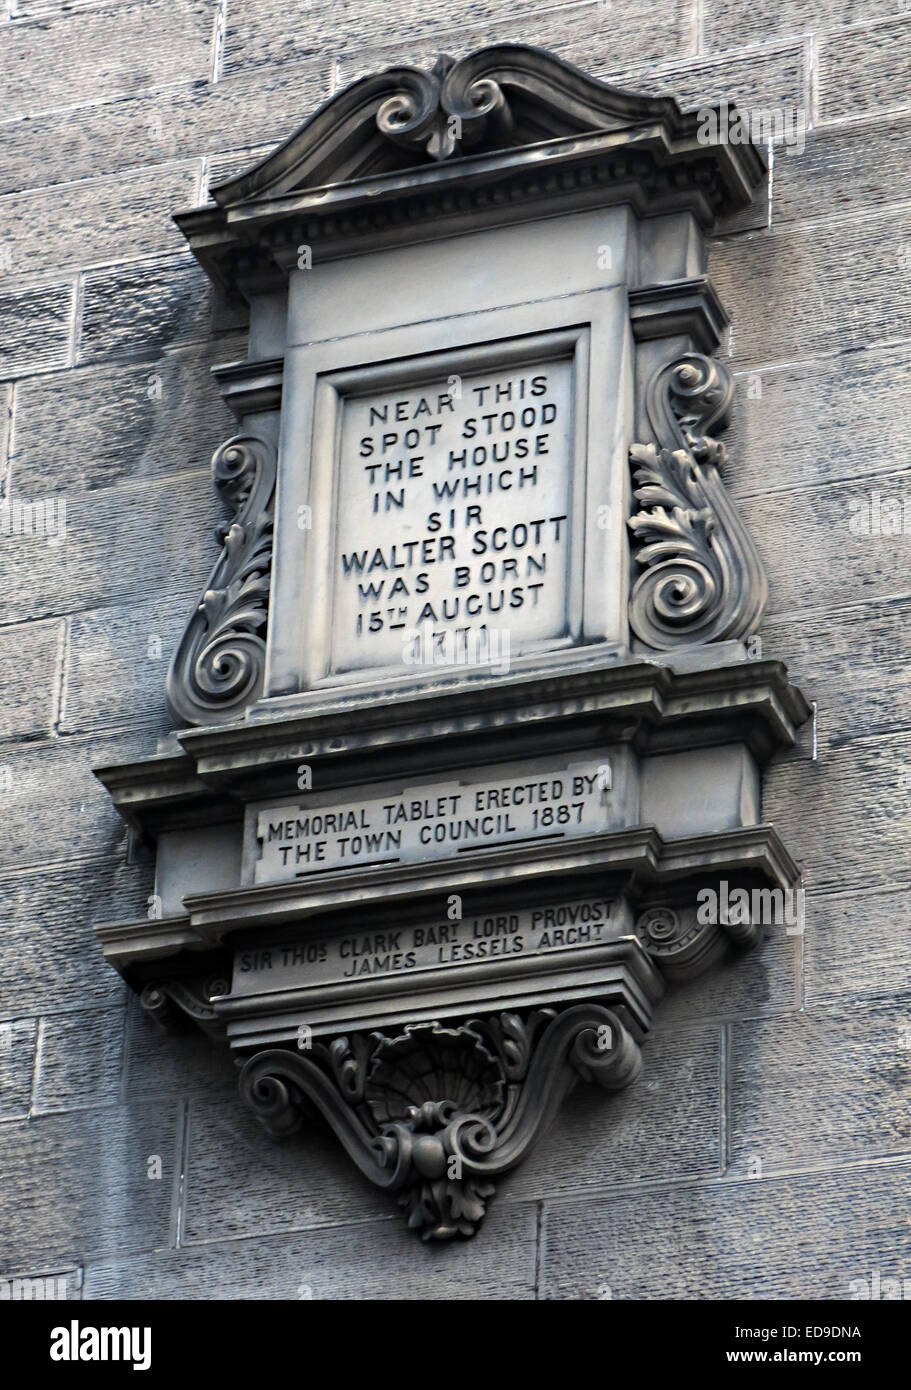 Mémorial de pierre à Sir Walter Scott né ici, Édimbourg, Écosse (College Wynd dans la vieille ville), Écosse, Royaume-Uni Banque D'Images